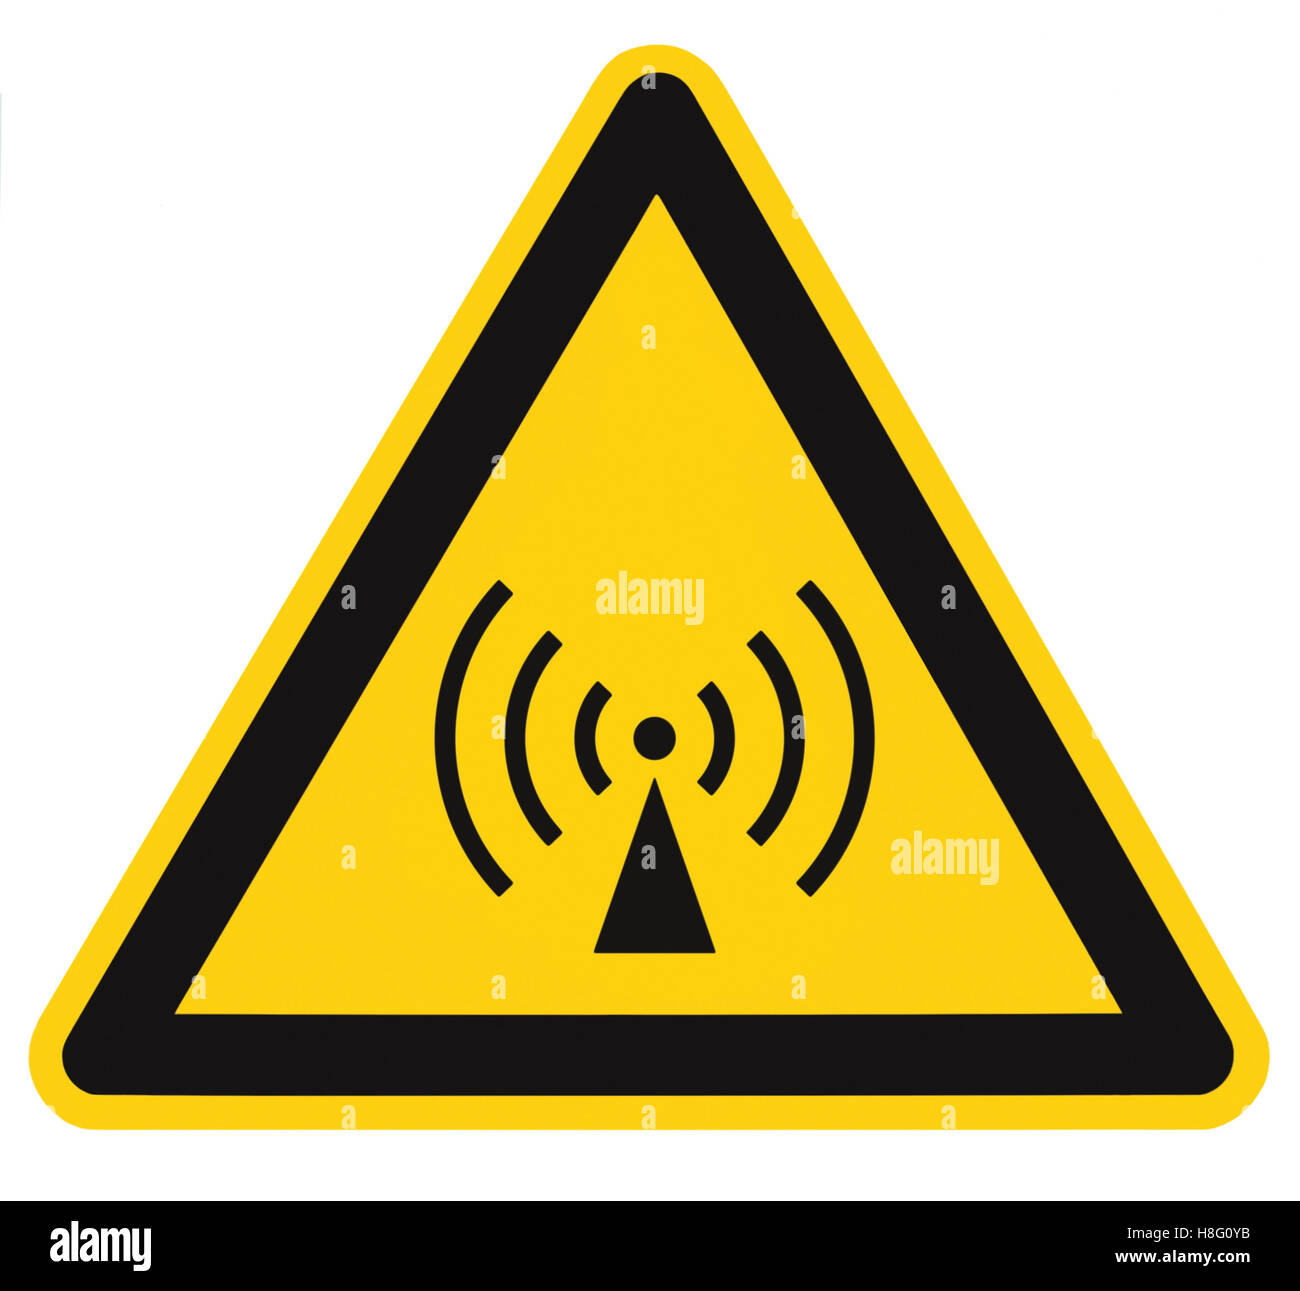 Non-ionizing radiation hazard safety area, danger warning sign sticker  label, large icon signage, isolated black yellow triangle Stock Photo -  Alamy